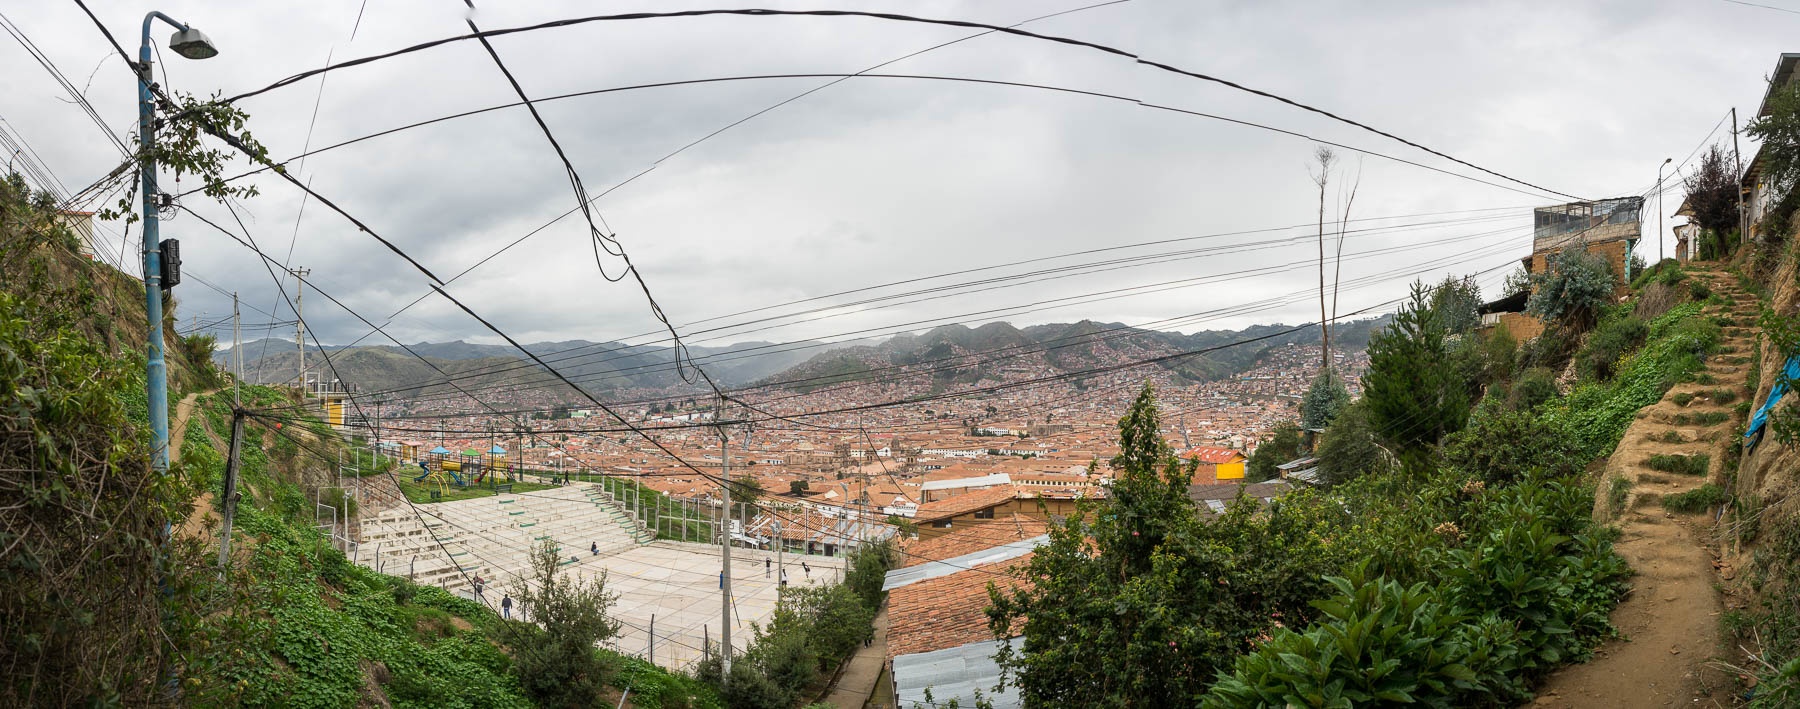 A poor neighborhood in Cusco